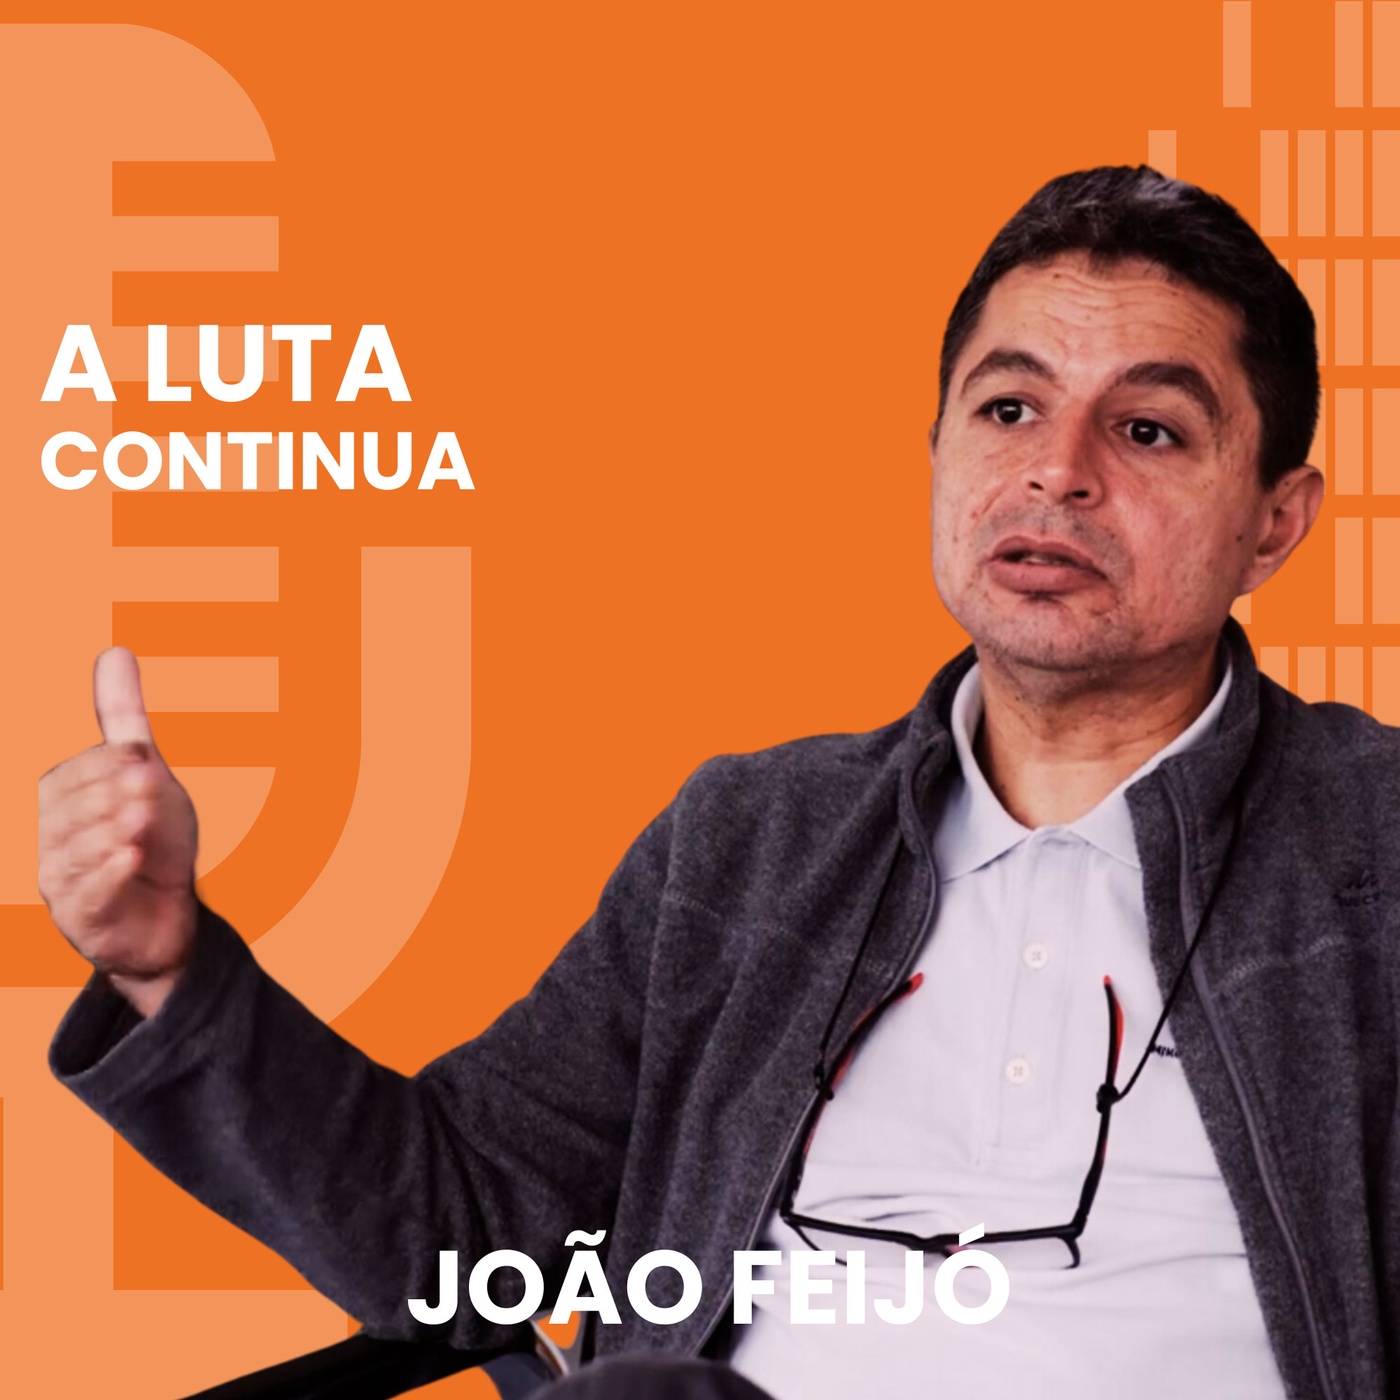 João Feijó ǀ Konflikt in Cabo Delgado in Mosambik